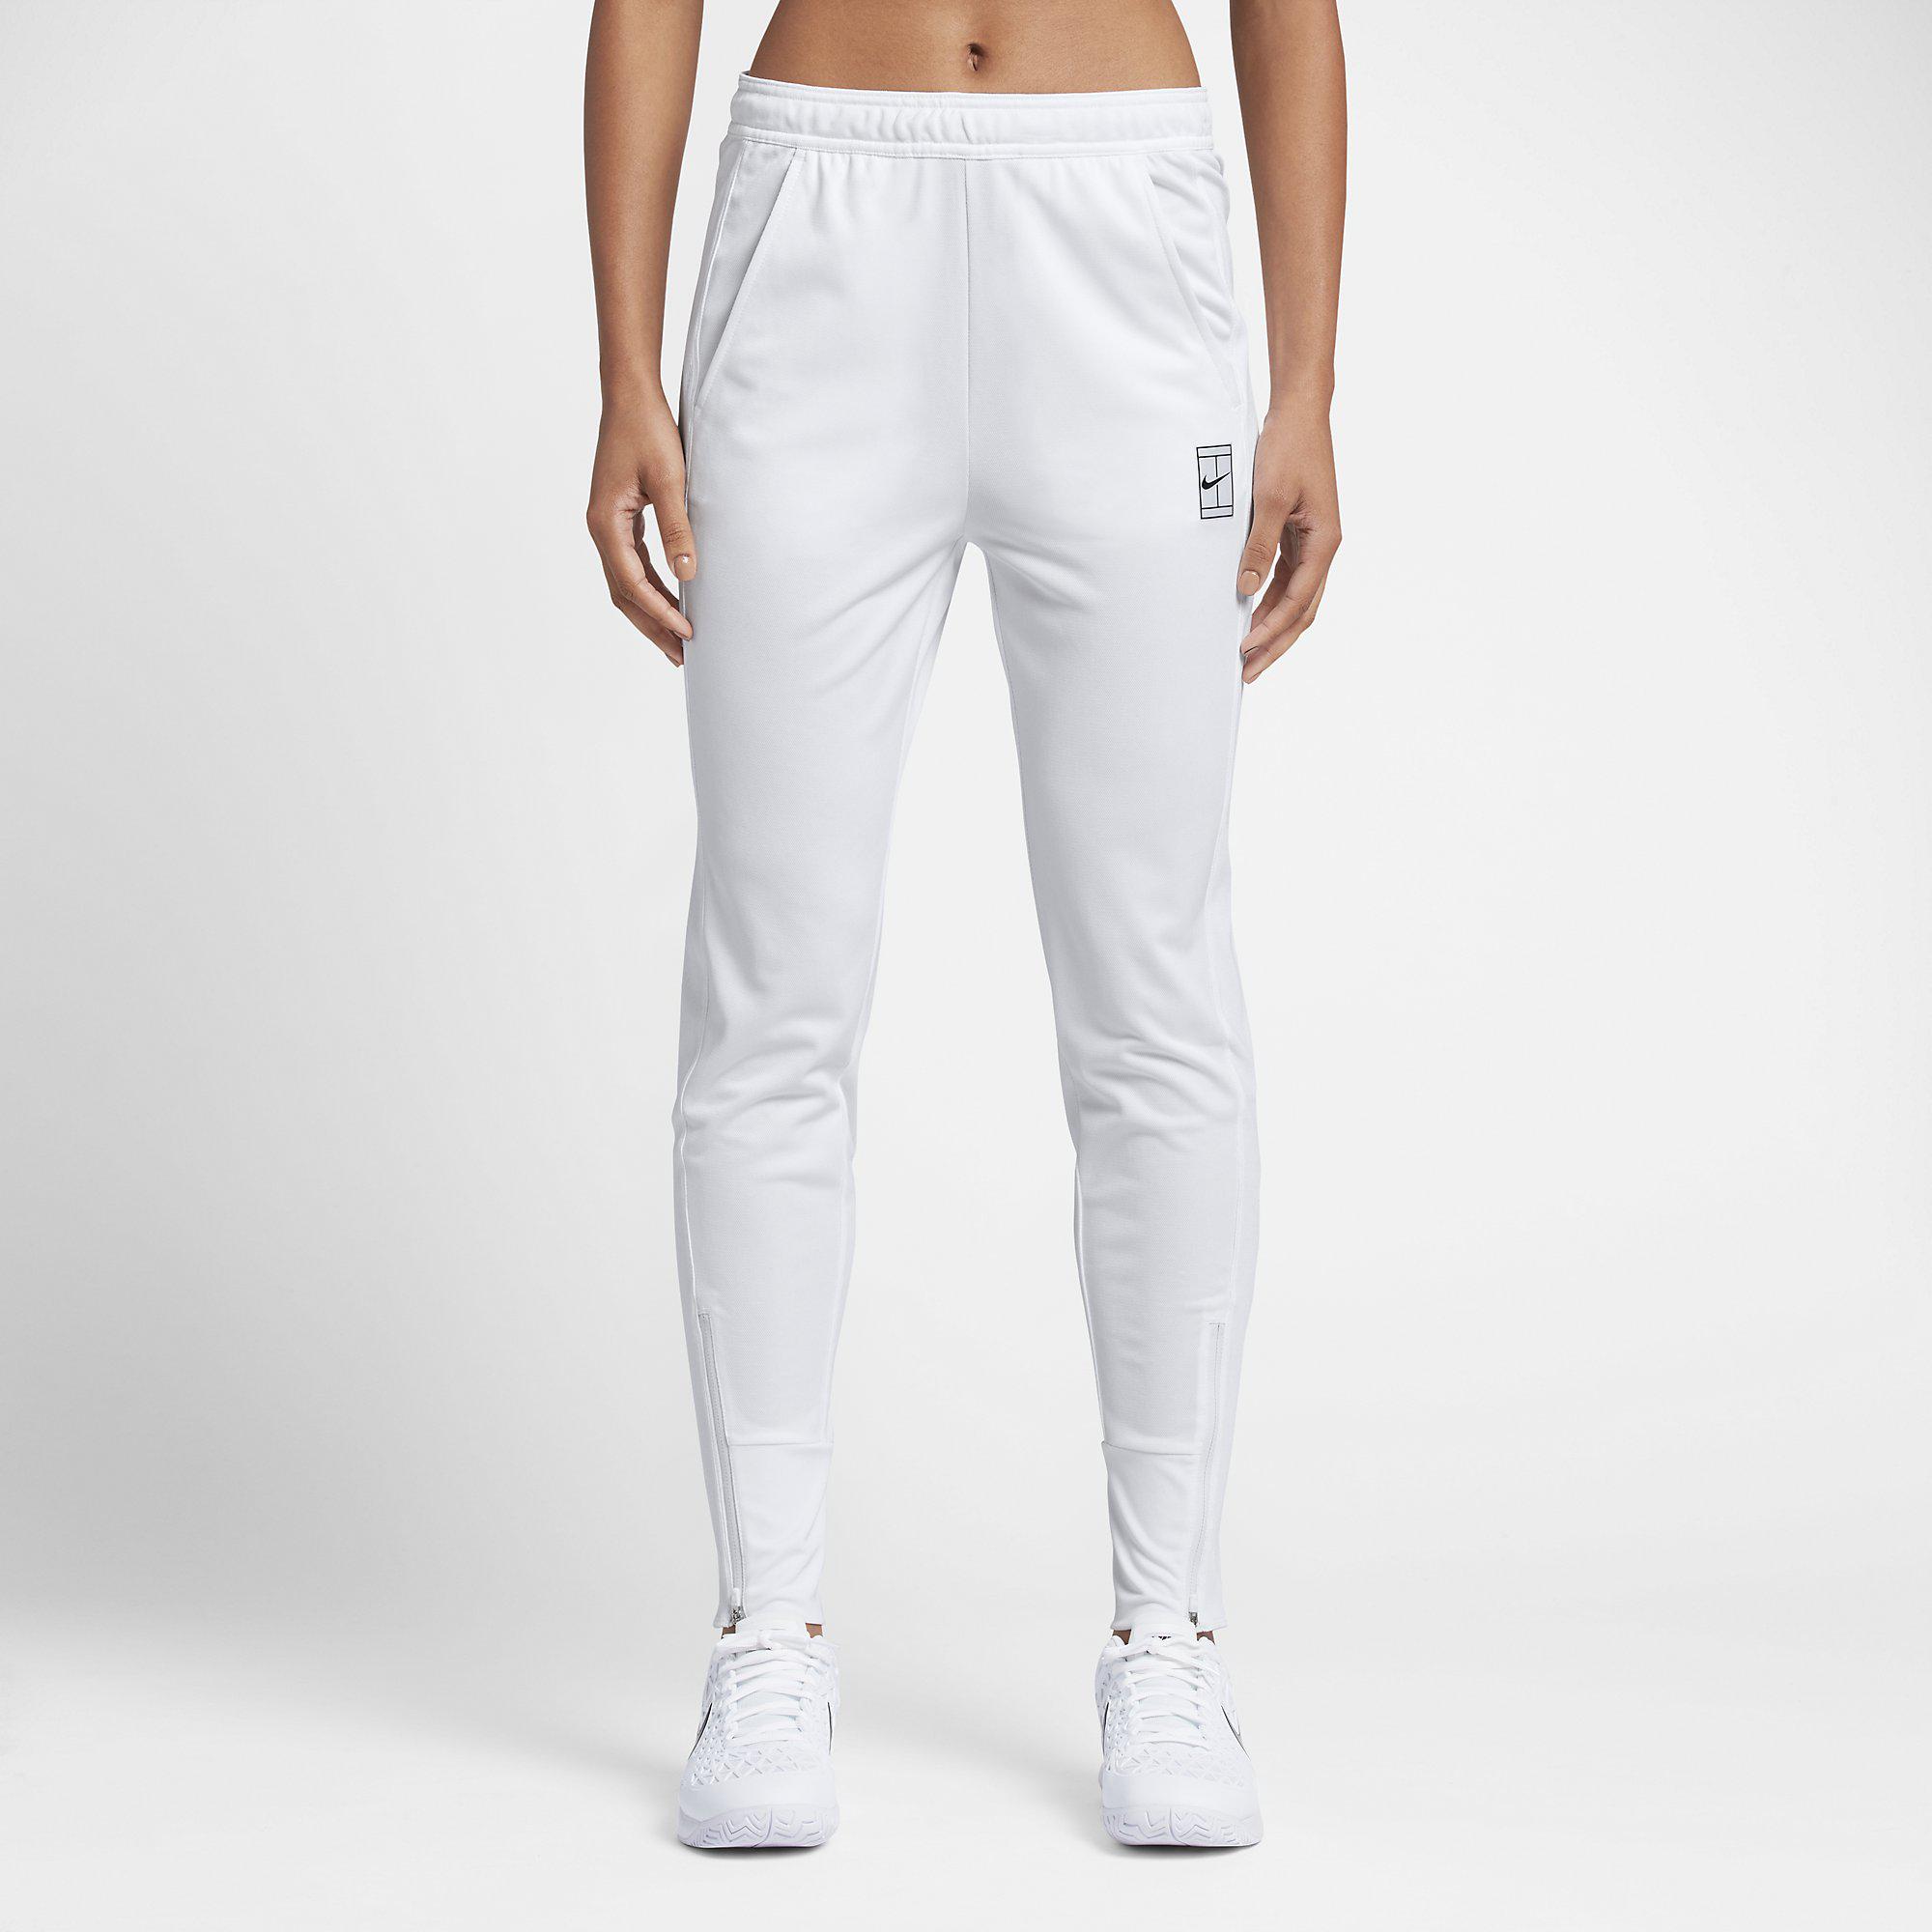 Nike Womens Dry Tennis Pants - White - Tennisnuts.com